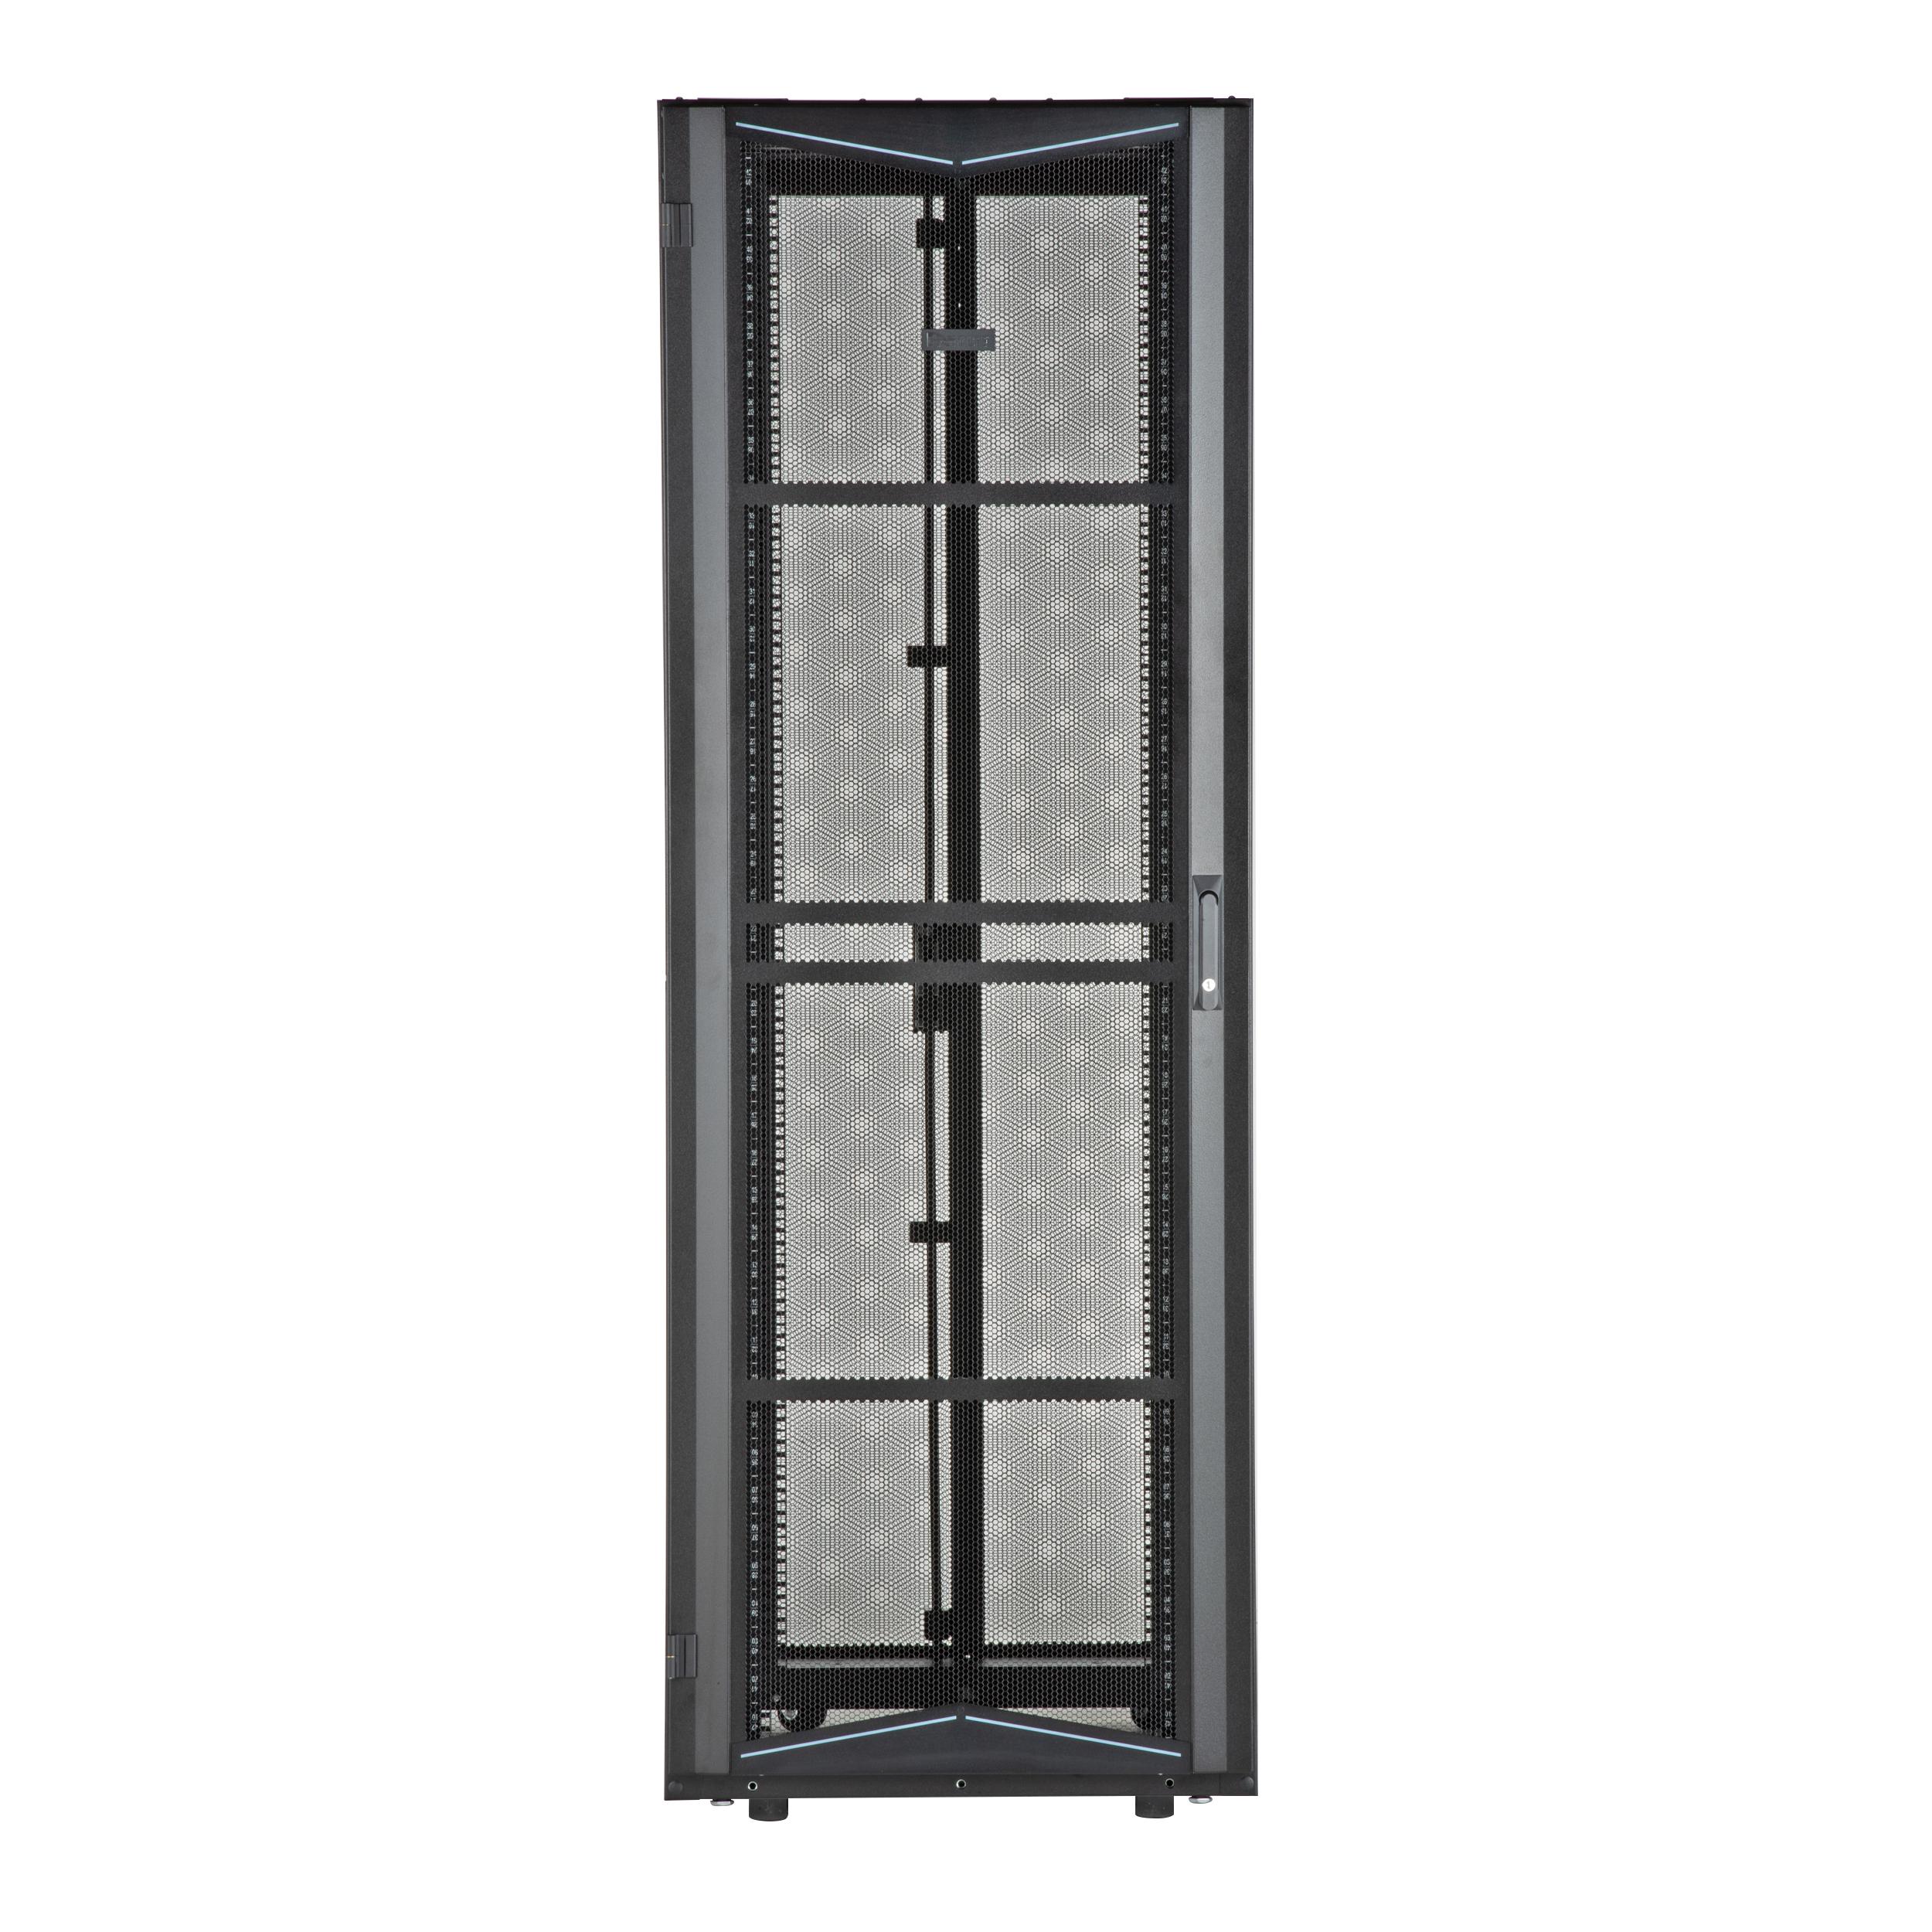 Panduit XG84522BS0005 FlexFusion Cabinet, 800mm x 45RU x 1200mm, Black